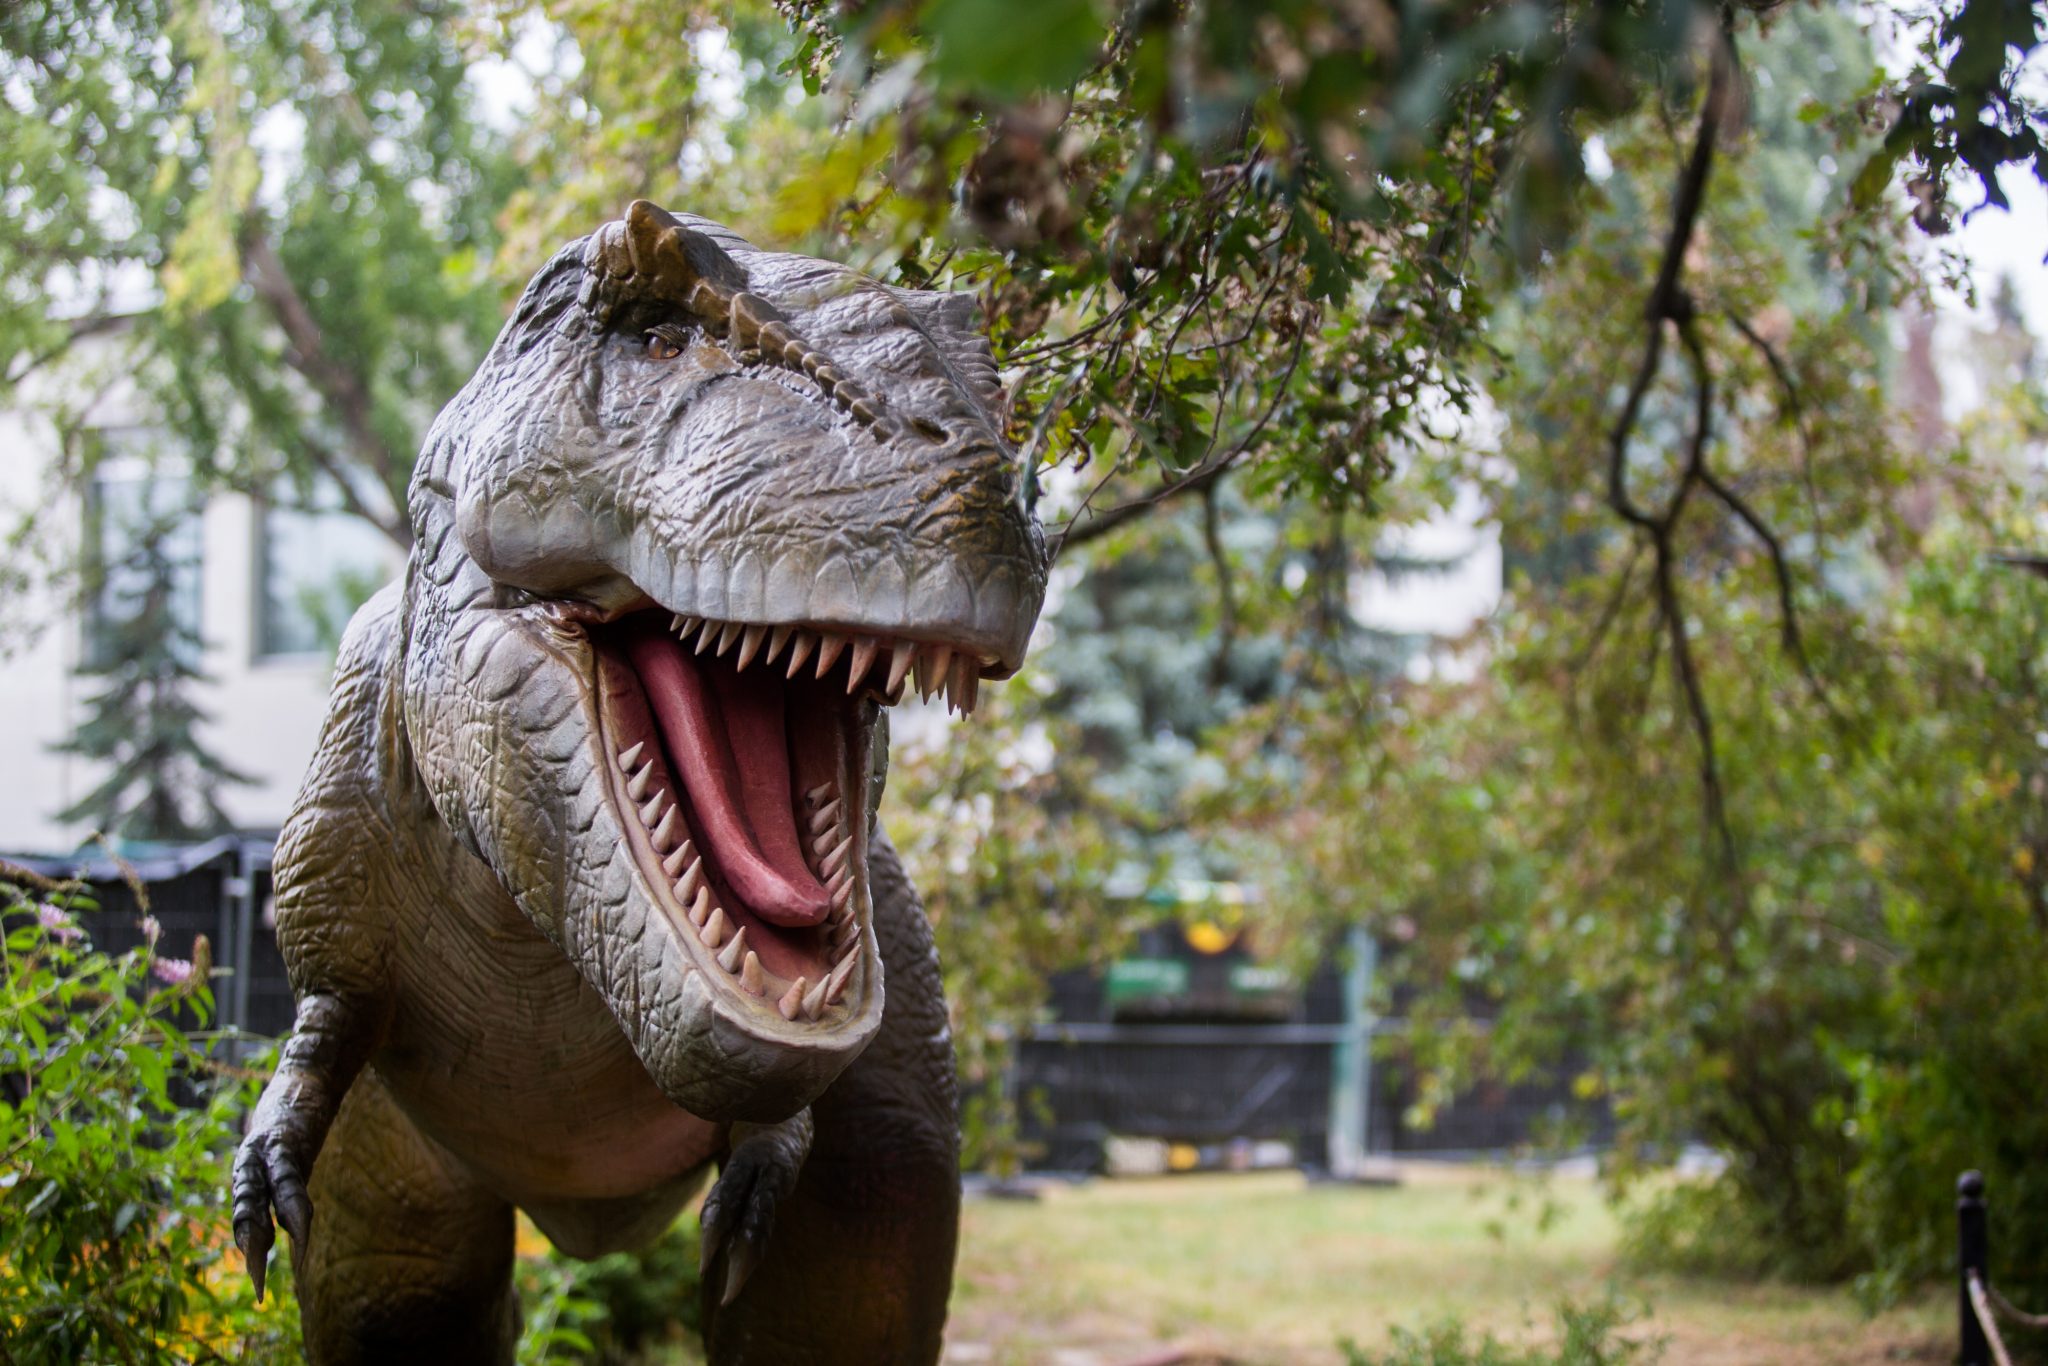 Парк Юрского периода: на ВДНГ вернулись динозавры